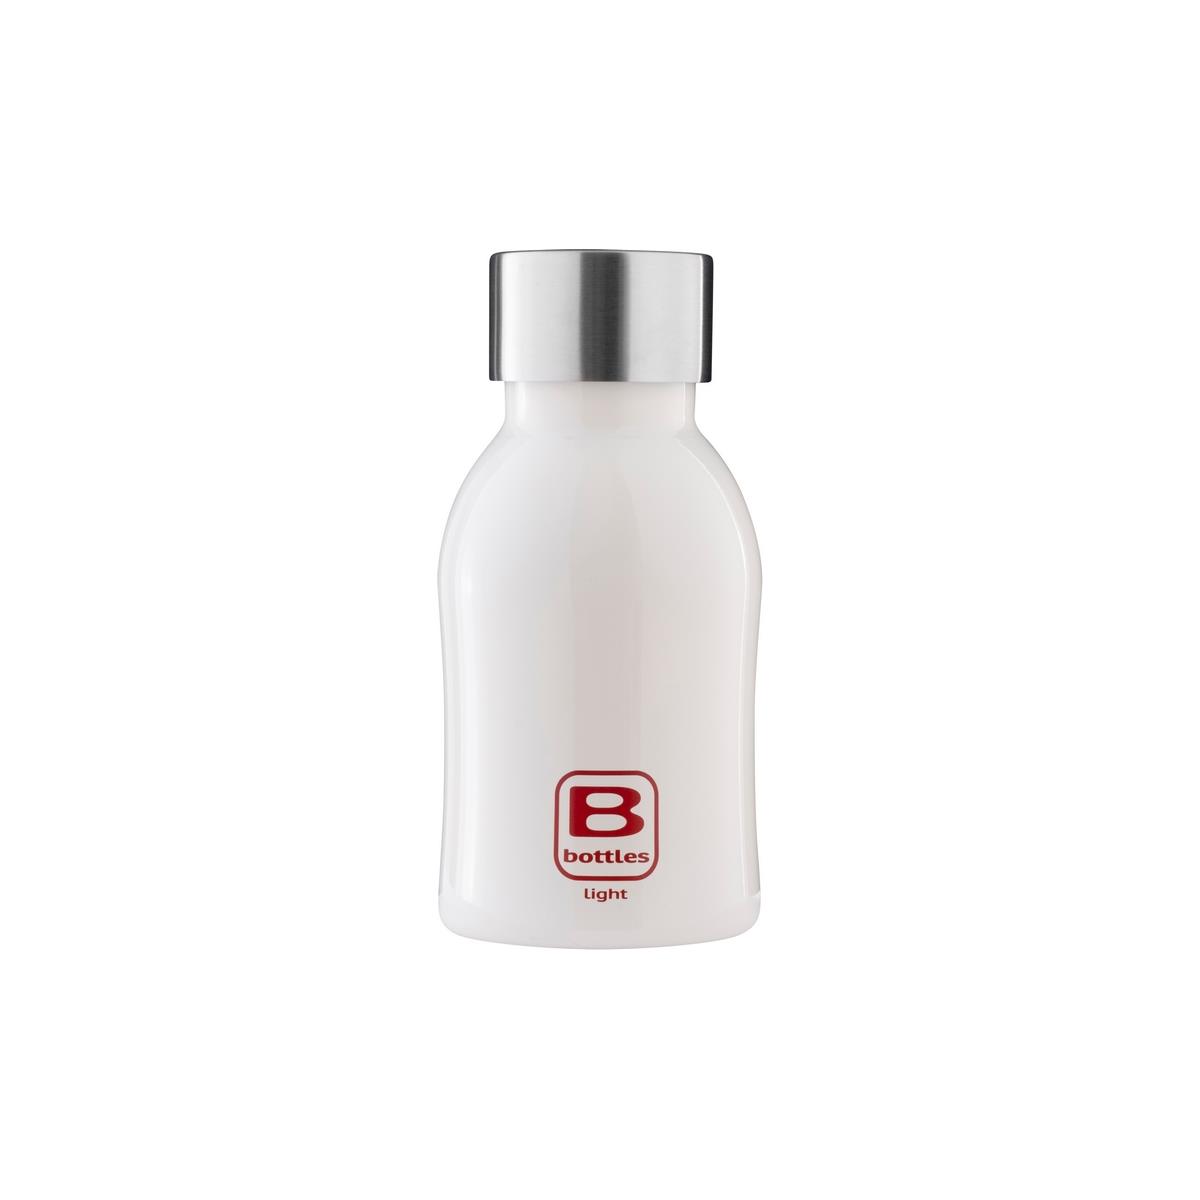 photo B Bottles Twin - Bianco Bright - 350 ml - Bottiglia Termica a doppia parete in acciaio inox 18/10